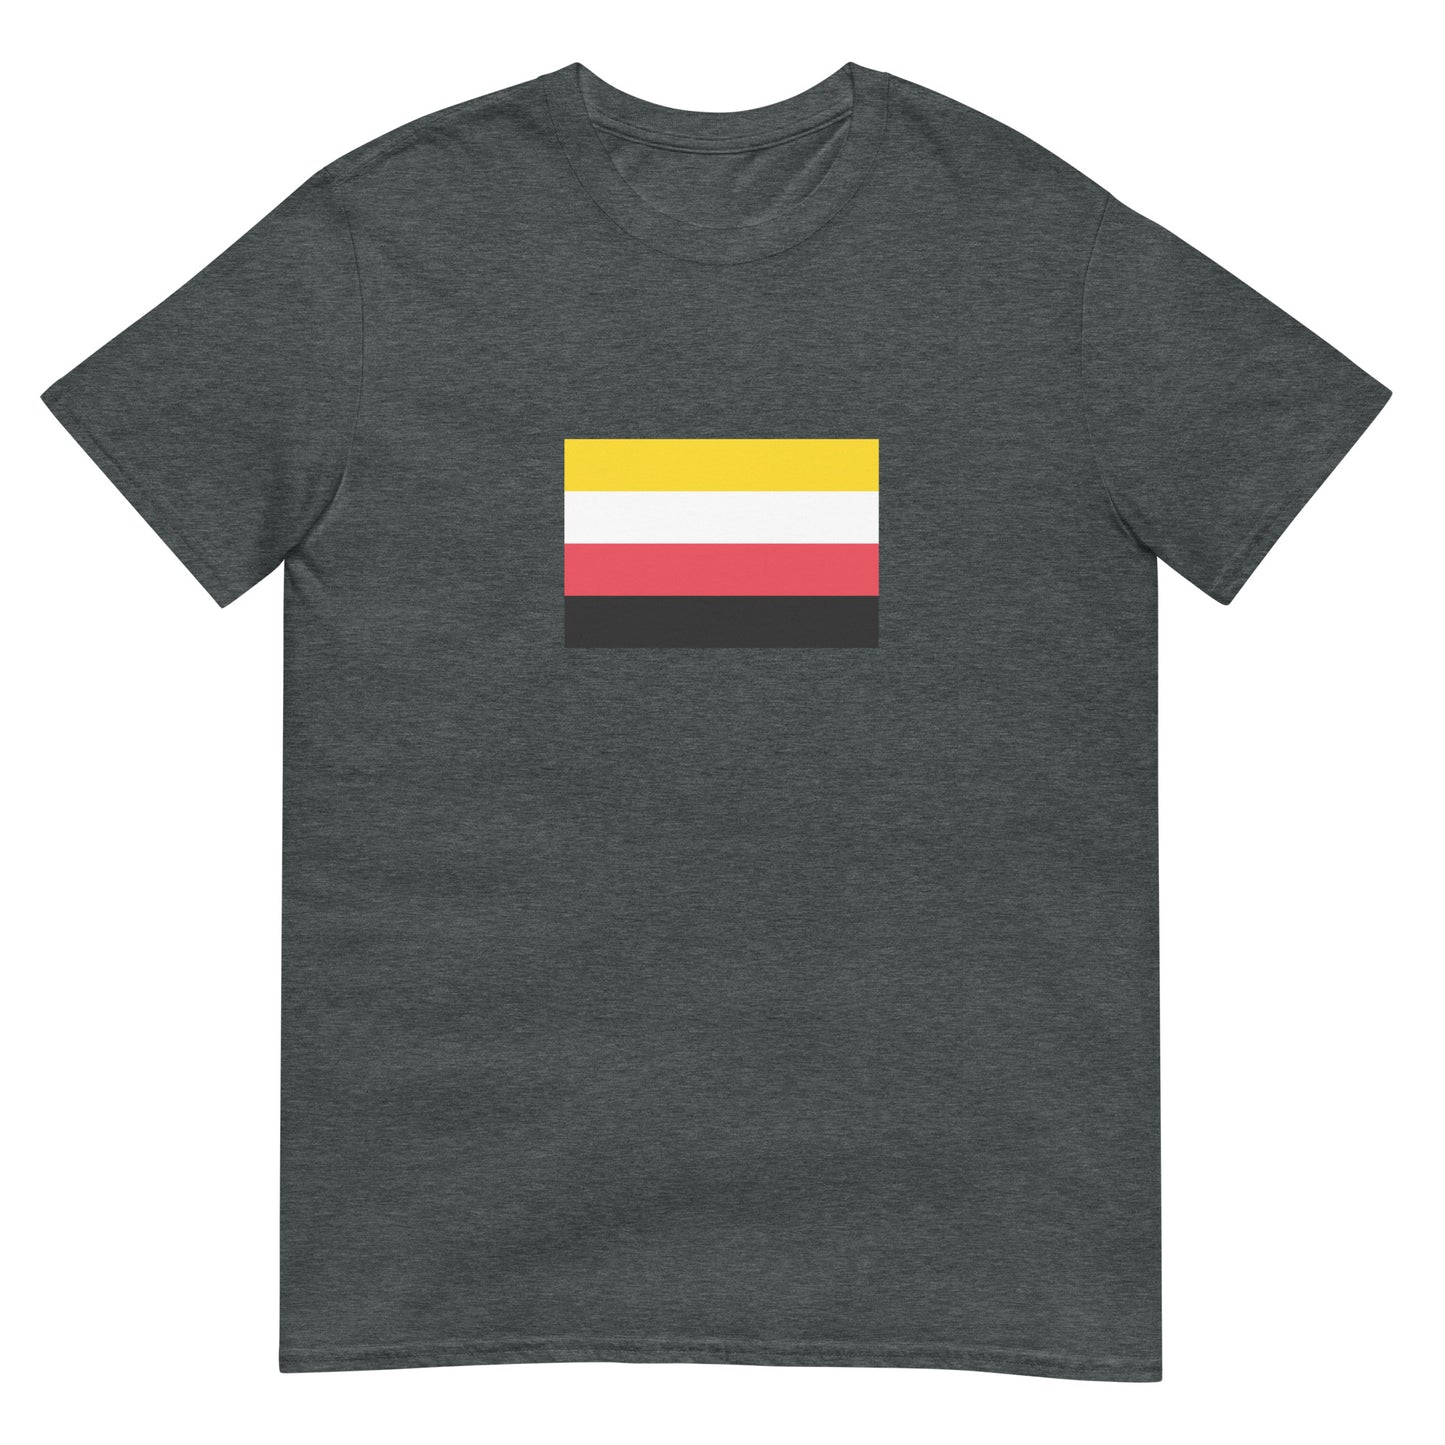 Chile - Qulla Indigenous People | Ethnic Flag Short-Sleeve Unisex T-Shirt